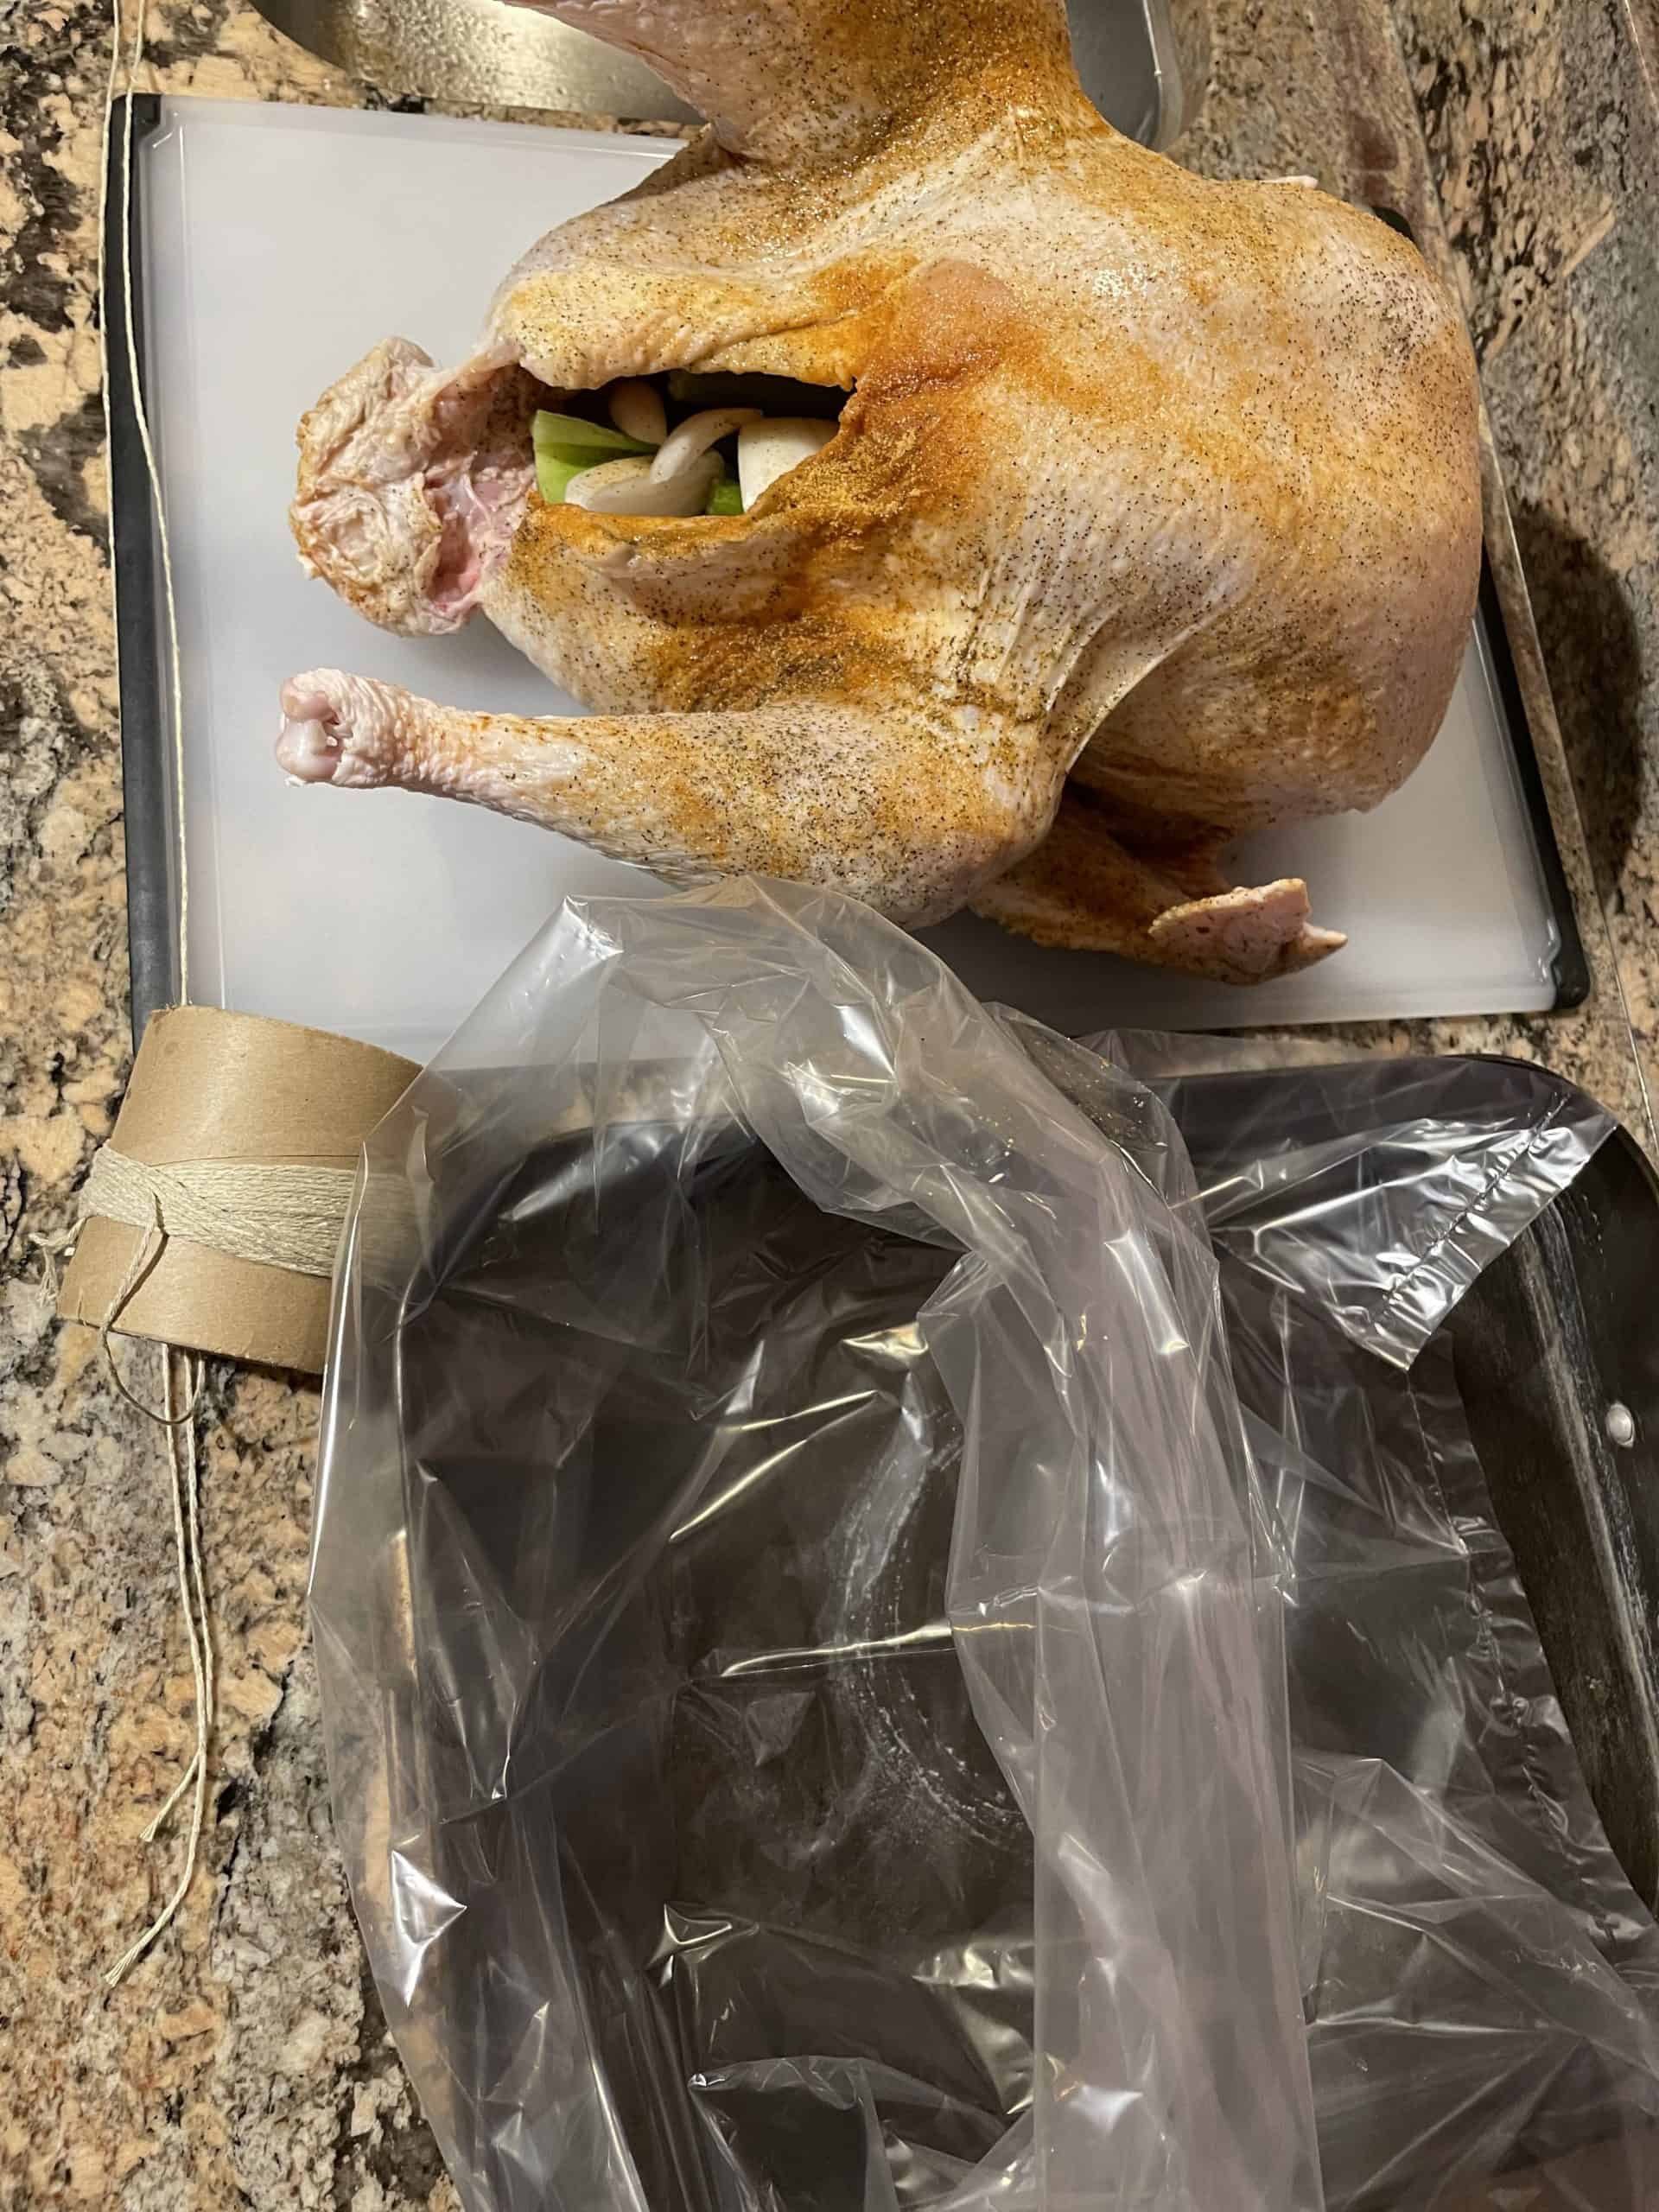 Place turkey onto a cutting board.